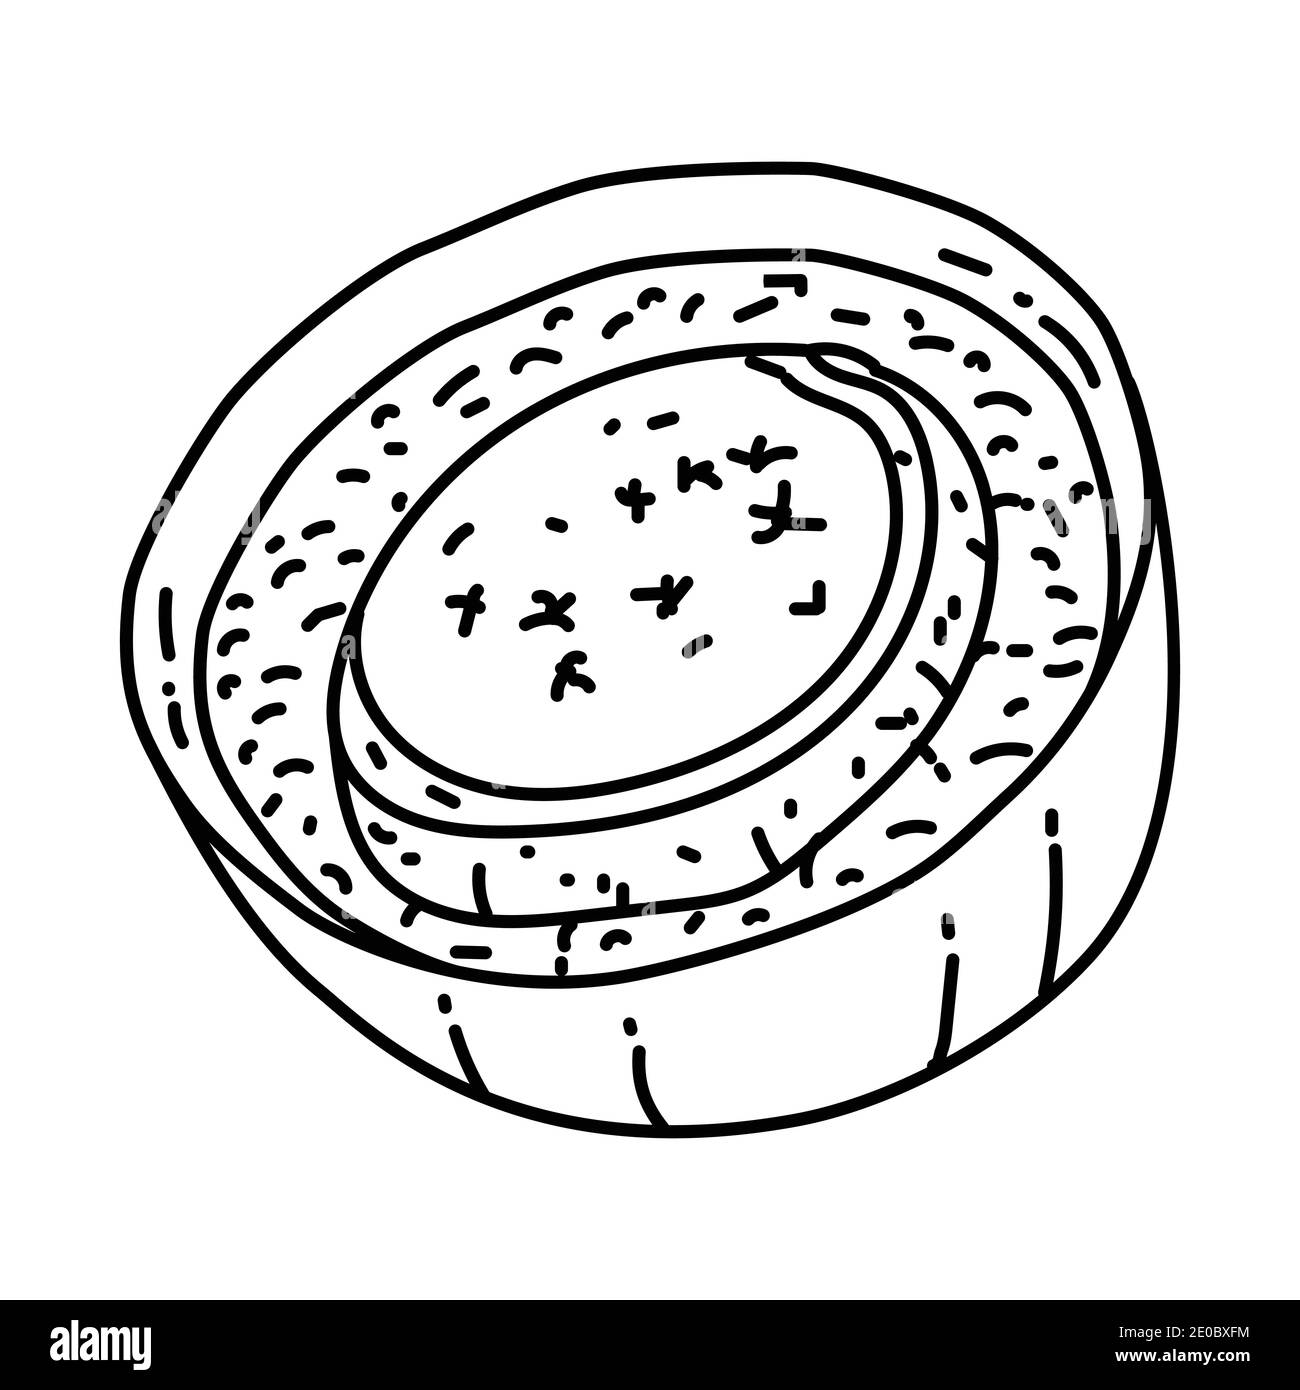 Soupe a l oignon France Food Set di icone disegnate a mano Vector. Illustrazione Vettoriale